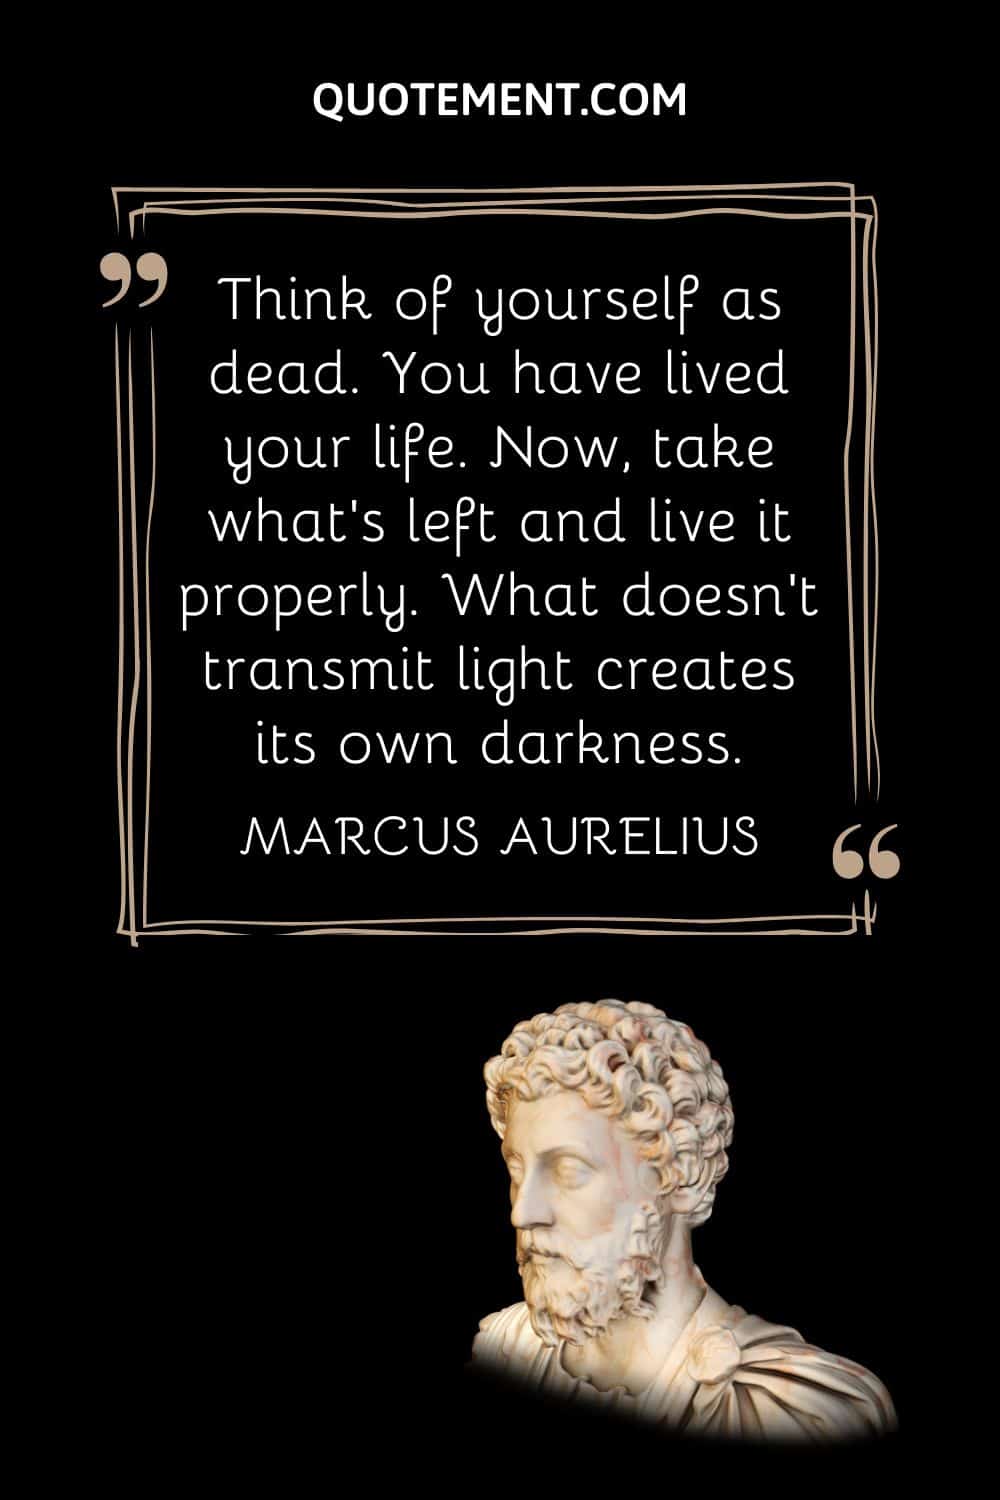 marcus aurelius statue representing quote by marcus aurelius